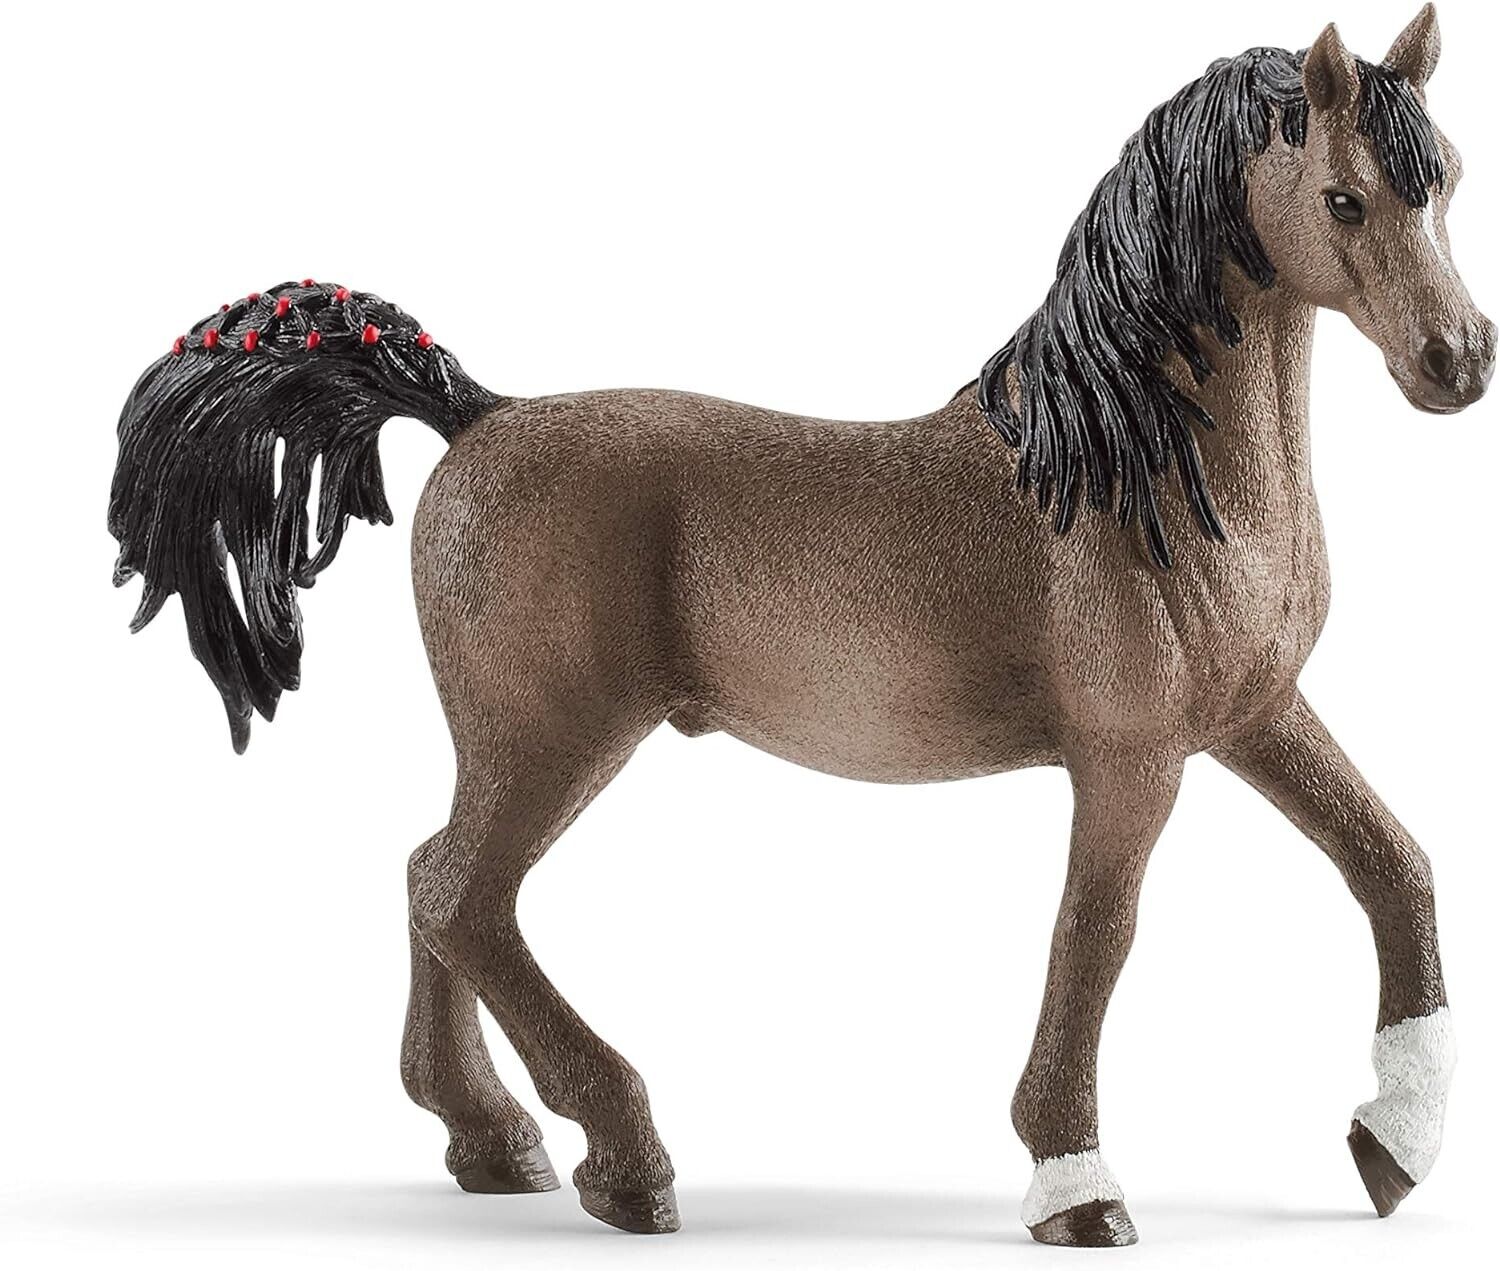 Schleich Horse Club Arabian Stallion Animal Figurine 13907 Toys For Boys & Girls